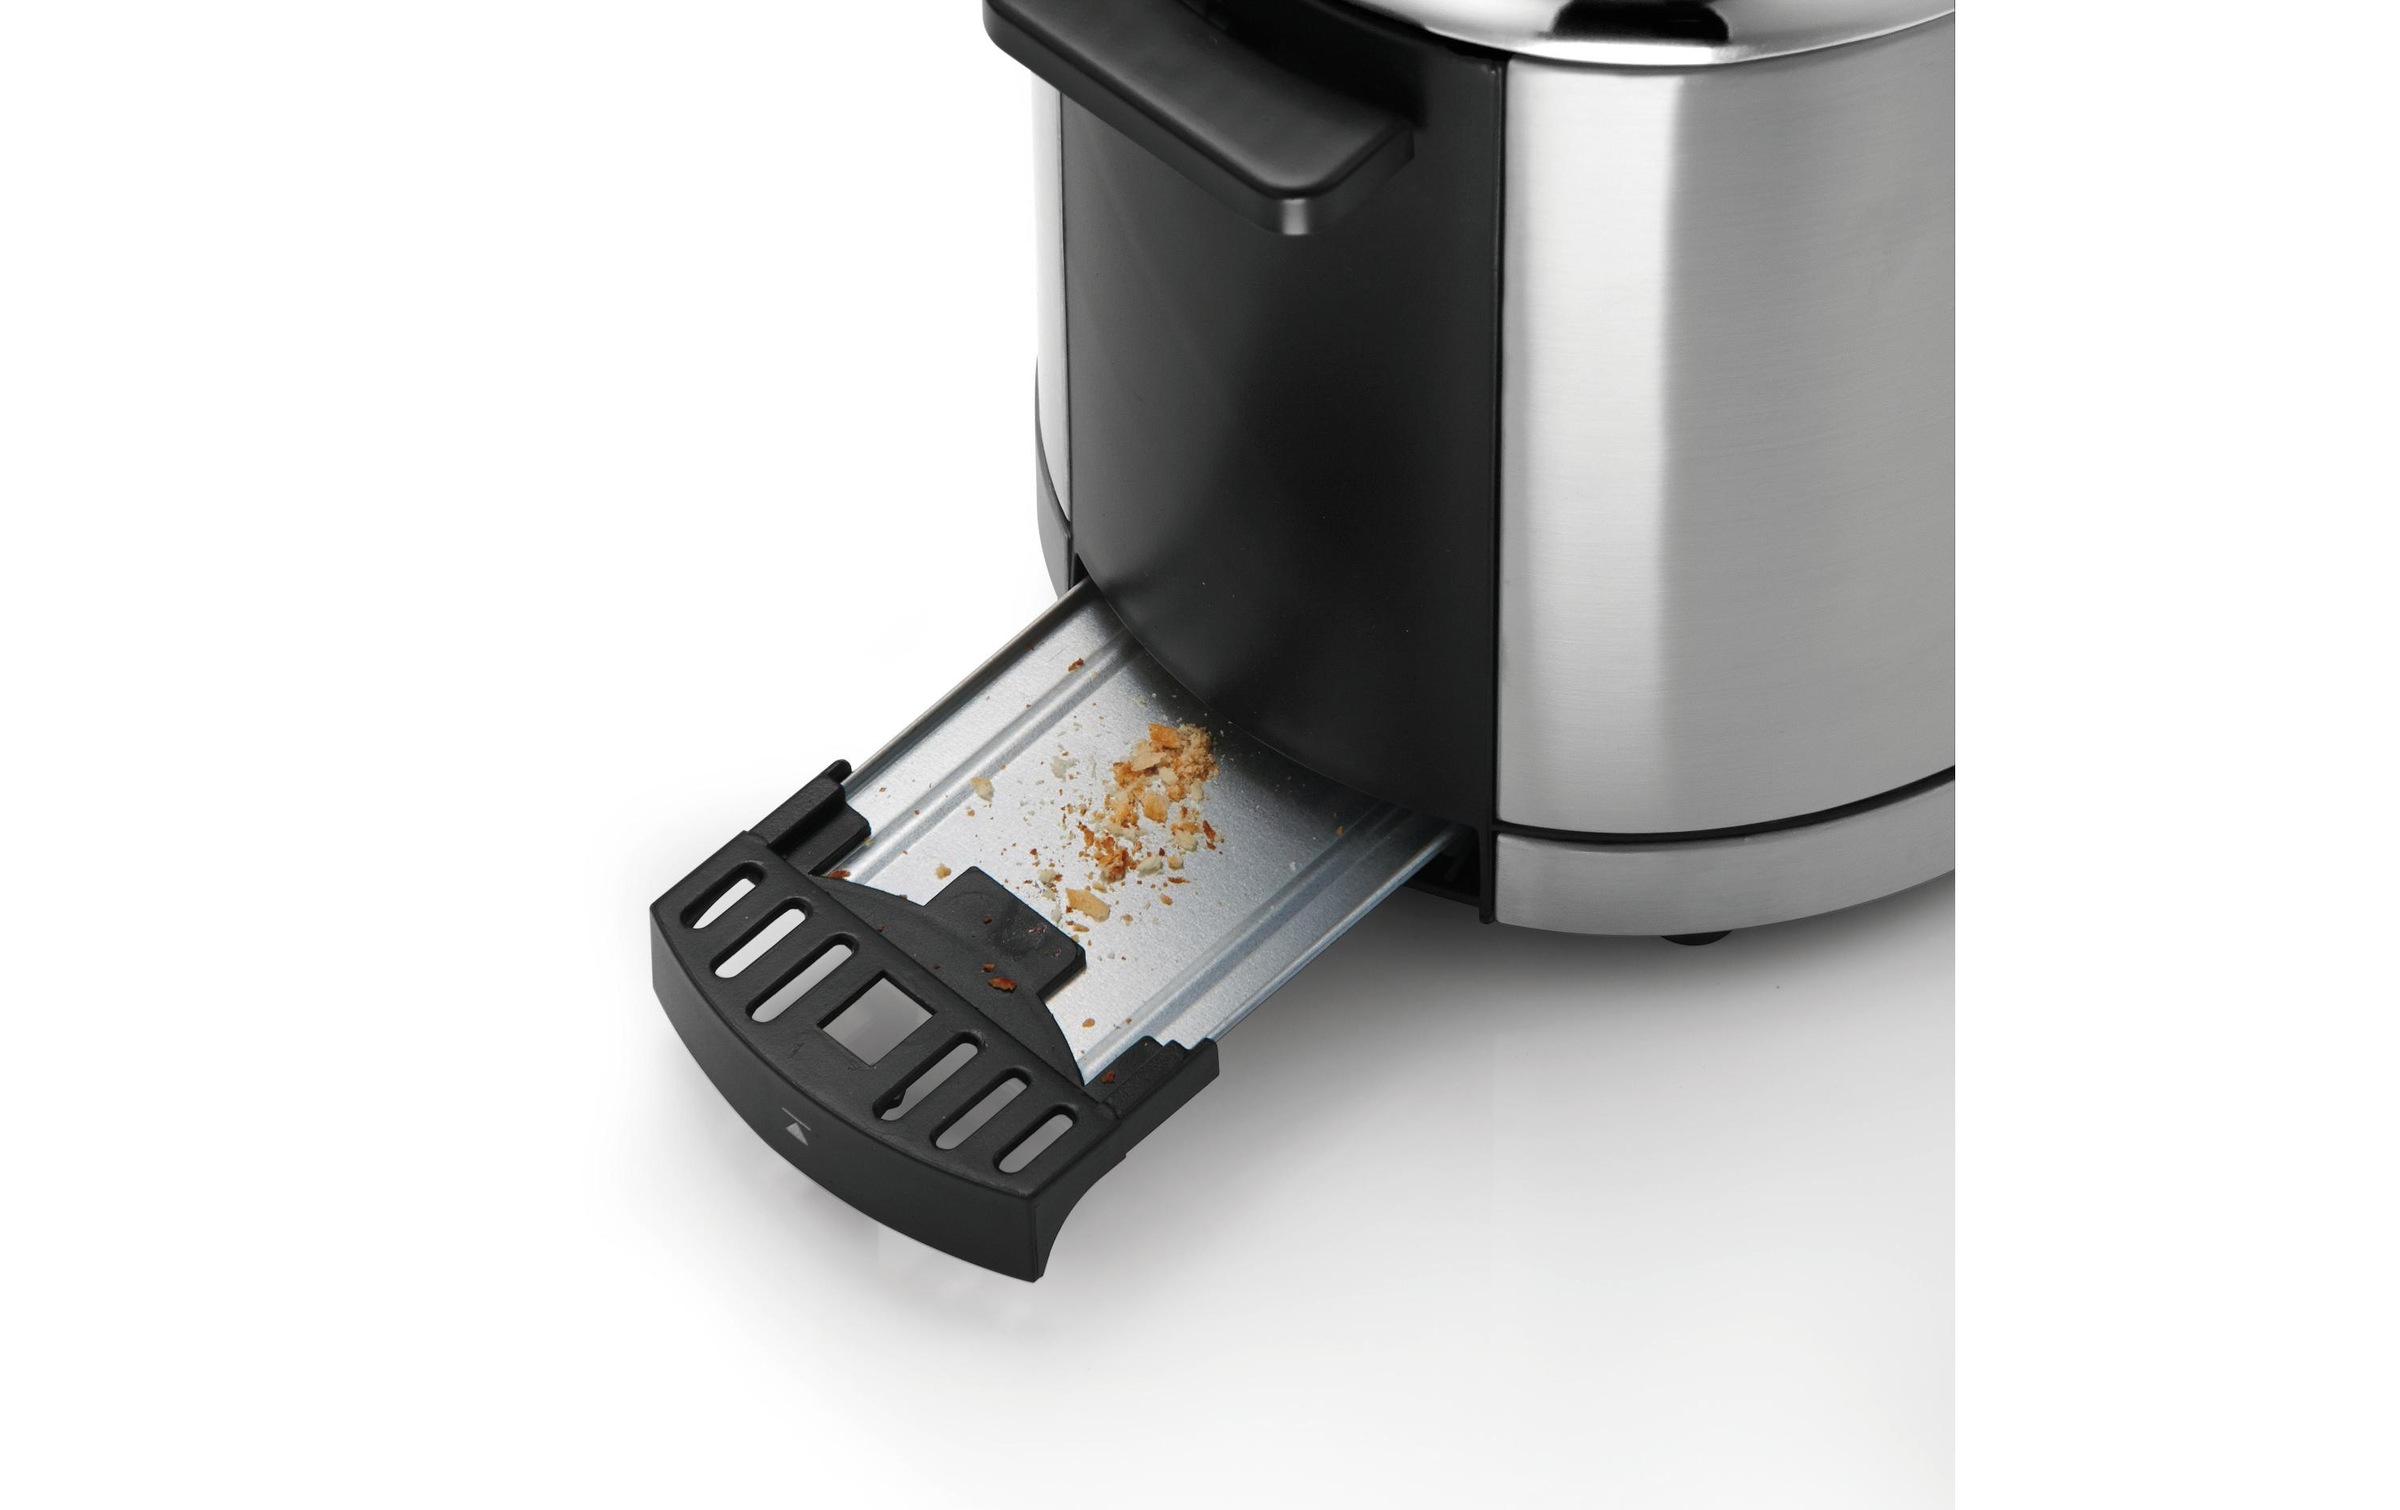 ♕ WMF Toaster »LONO Silberfarben«, für 2 Scheiben, 900 W versandkostenfrei  auf